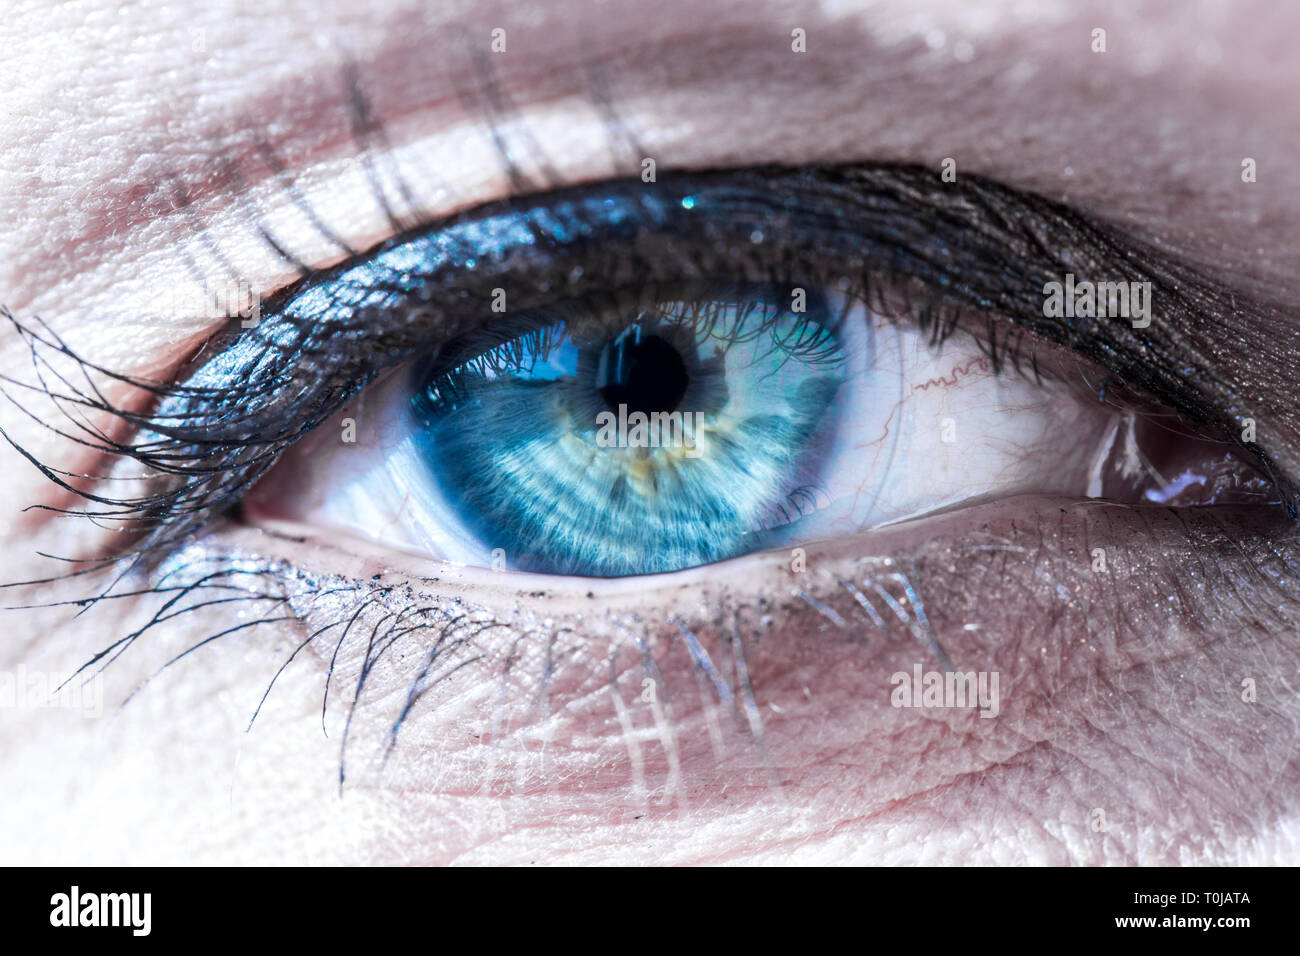 A beautiful makro closeup of an eye. Stock Photo